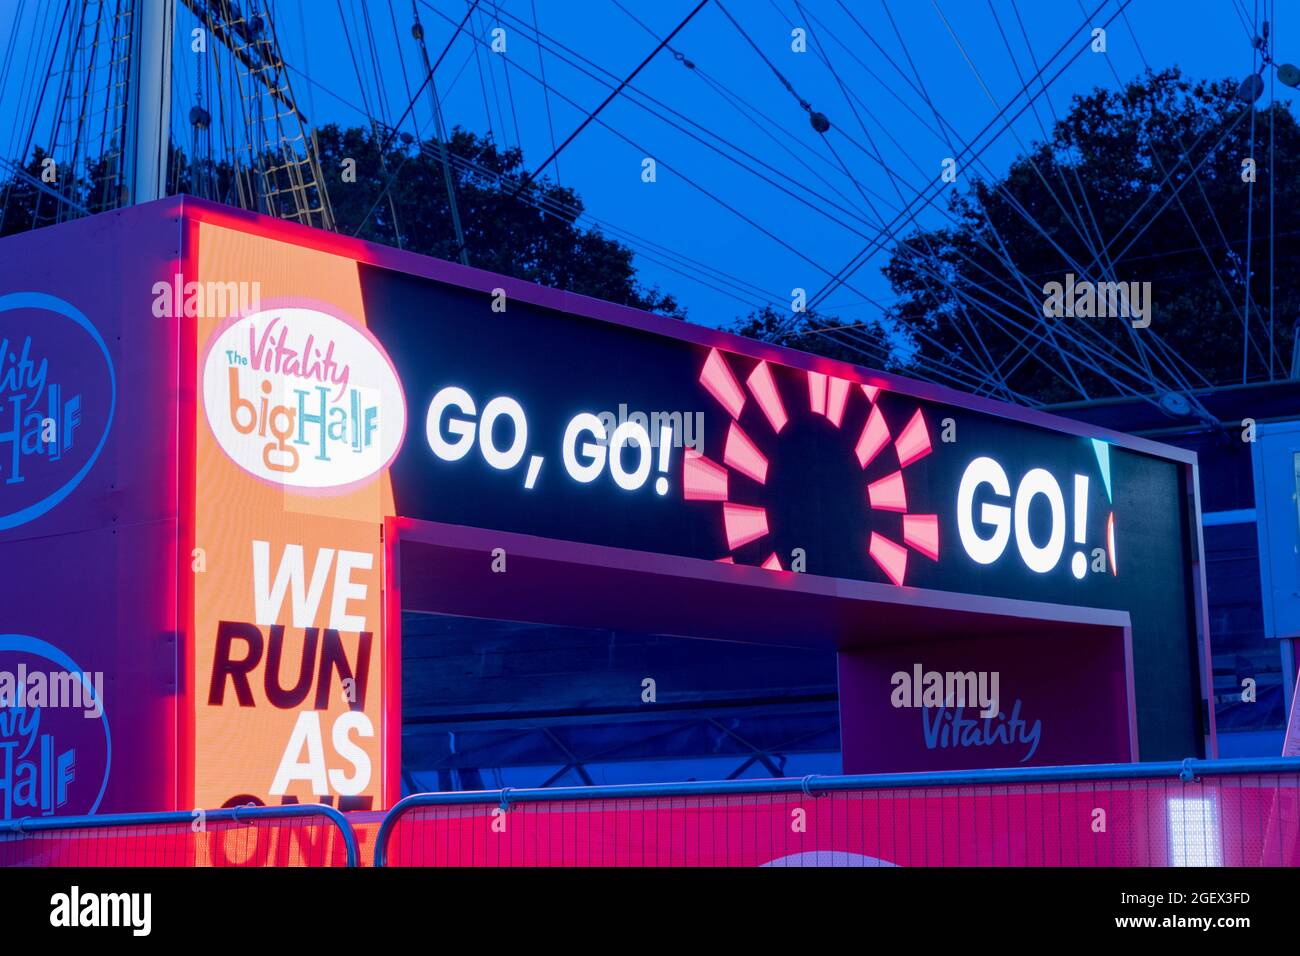 Le panneau GO GO GO s'allume sur l'écran LED à la ligne d'arrivée du BIG Half Marathon UK 2021 London Greenwich Cutty Sark England Banque D'Images